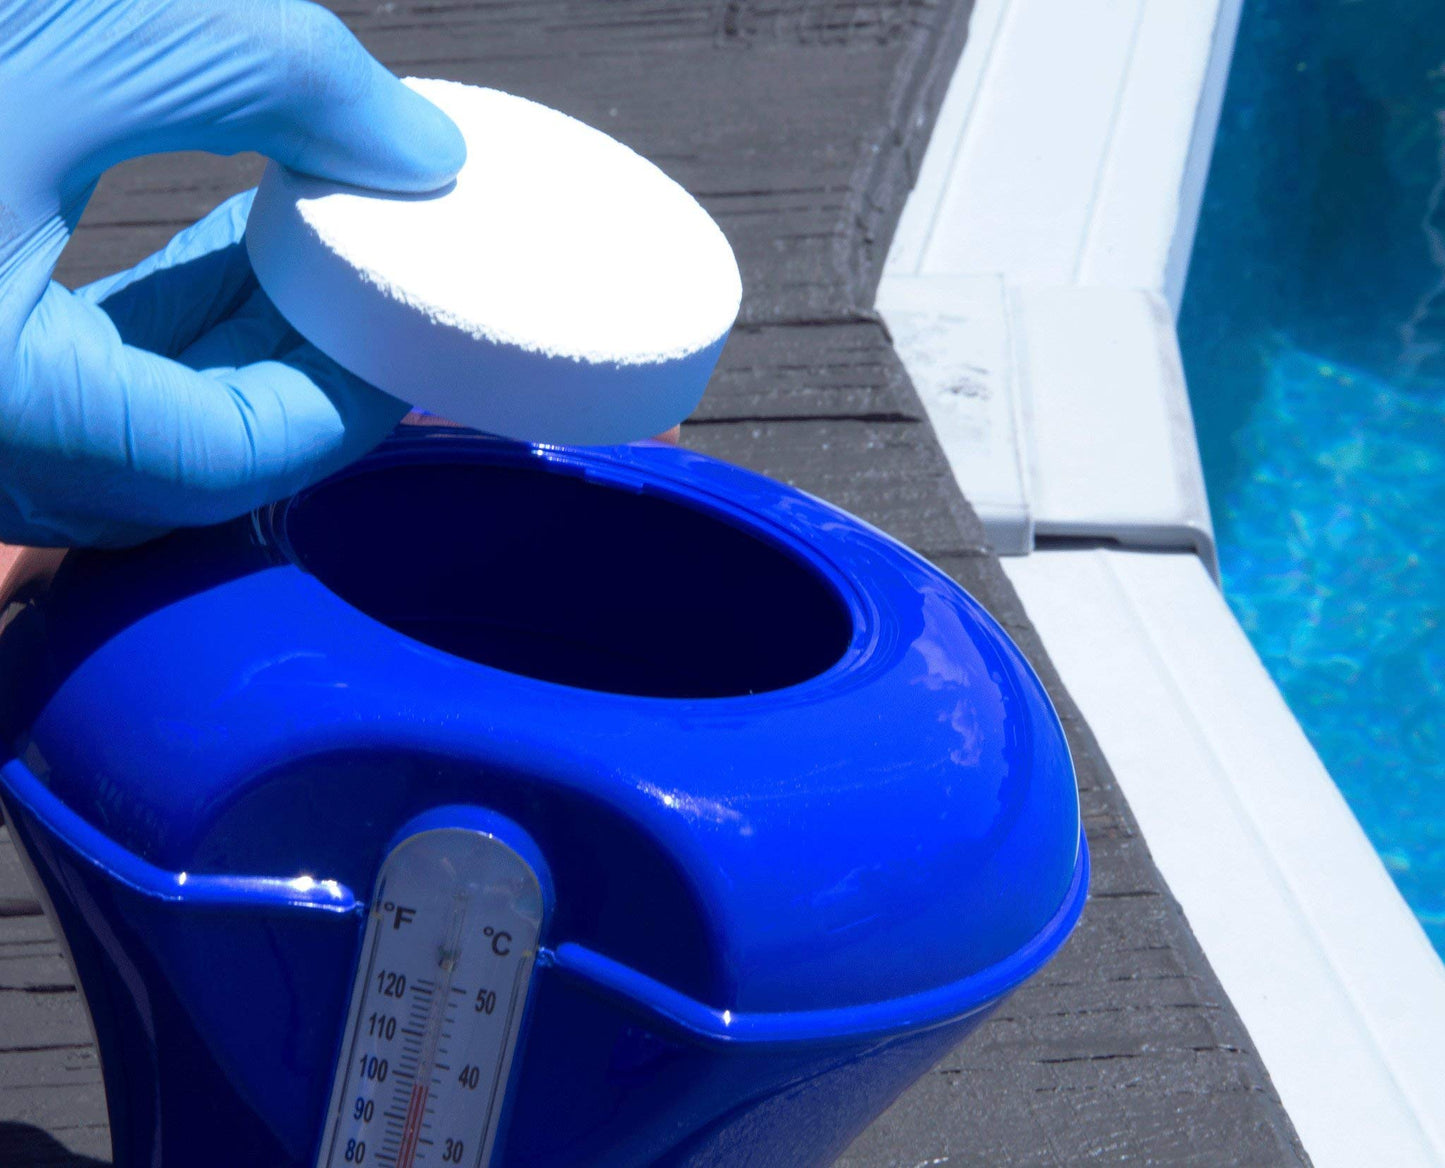 Rx Clear Comprimés de chlore stabilisé de 1 pouce | Utiliser comme bactéricide, algicide et désinfectant dans les piscines et les spas | Dissolution lente et protection UV | 8 livres